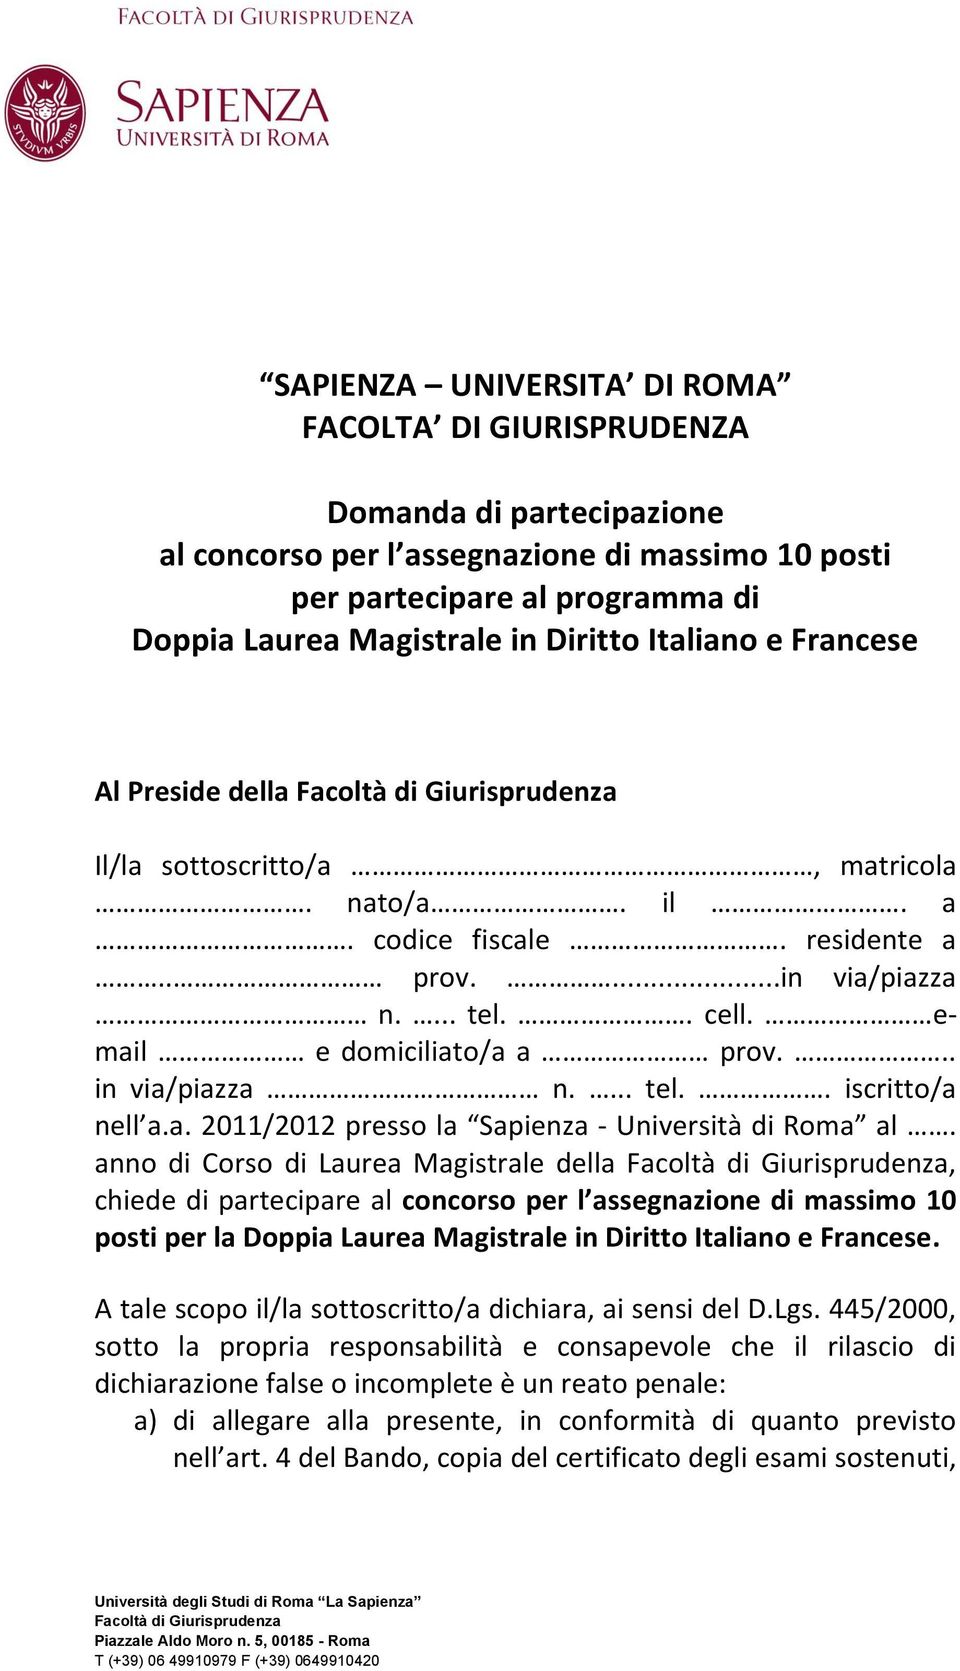 email e domiciliato/a a prov... in via/piazza n.... tel.. iscritto/a nell a.a. 2011/2012 presso la Sapienza - Università di Roma al.